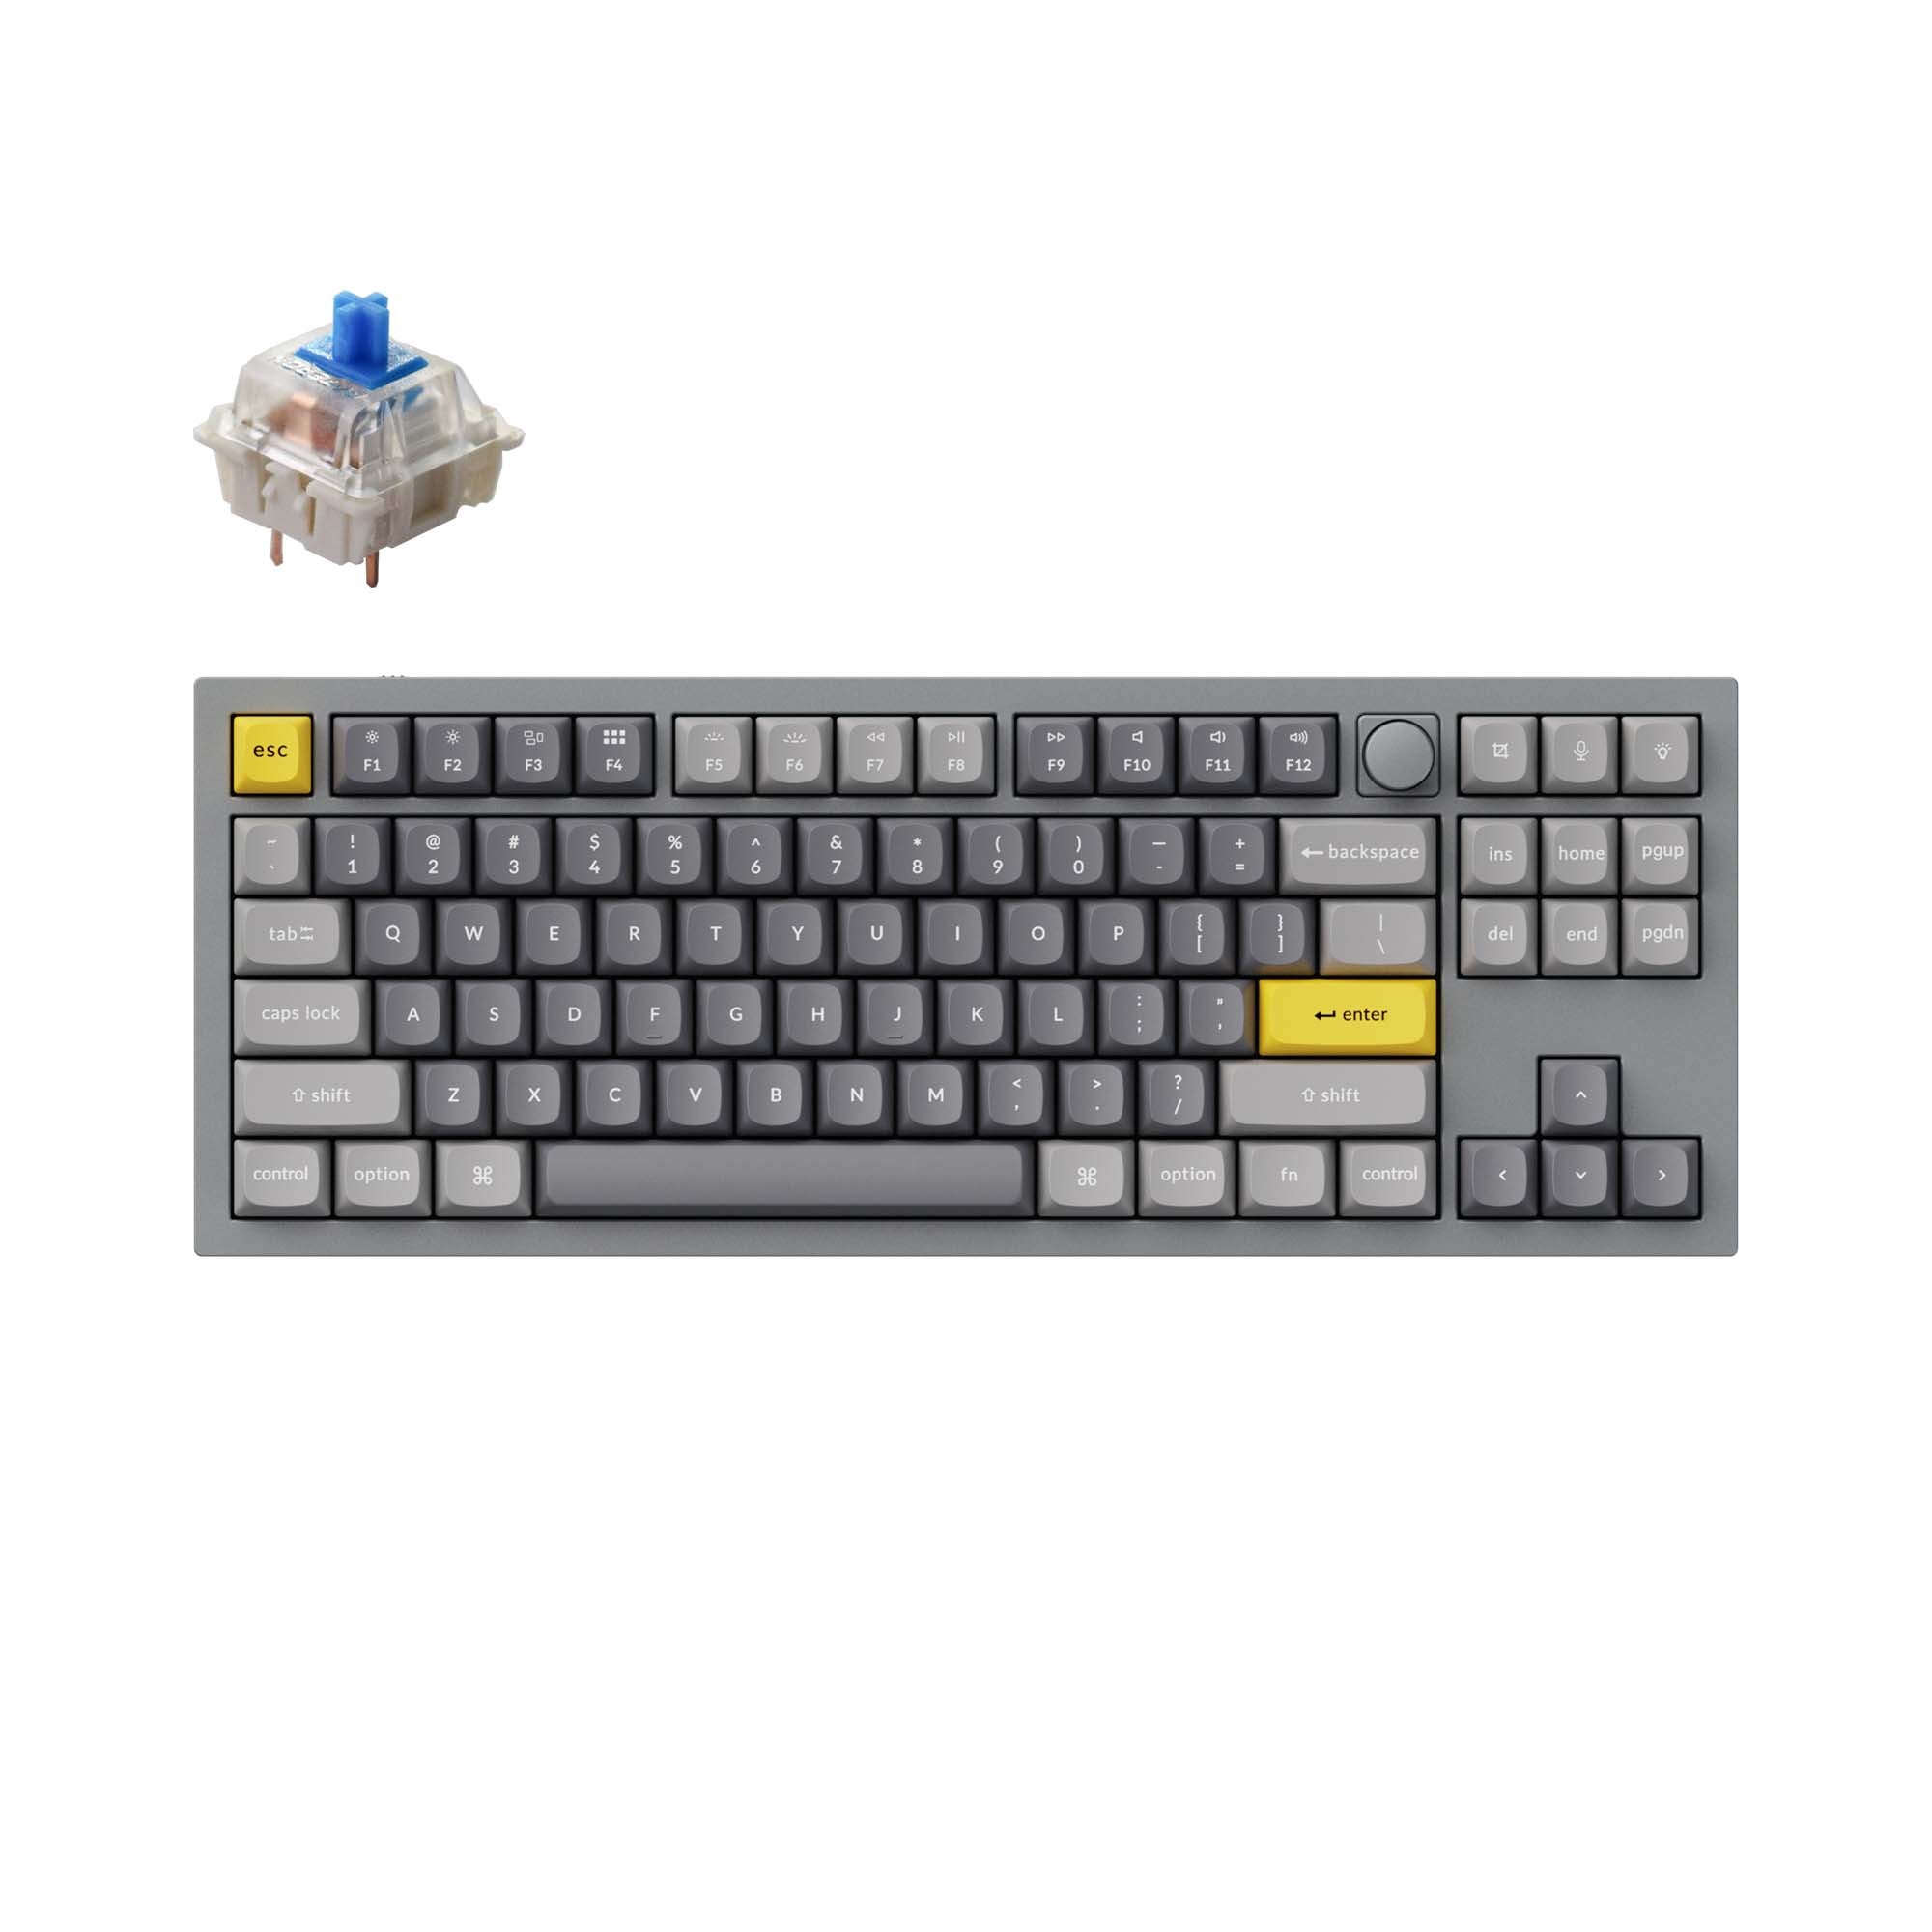 Keychron-Q3-tkl-qmk-custom-mechanical-keyboard-knob-version-grey-blue-B